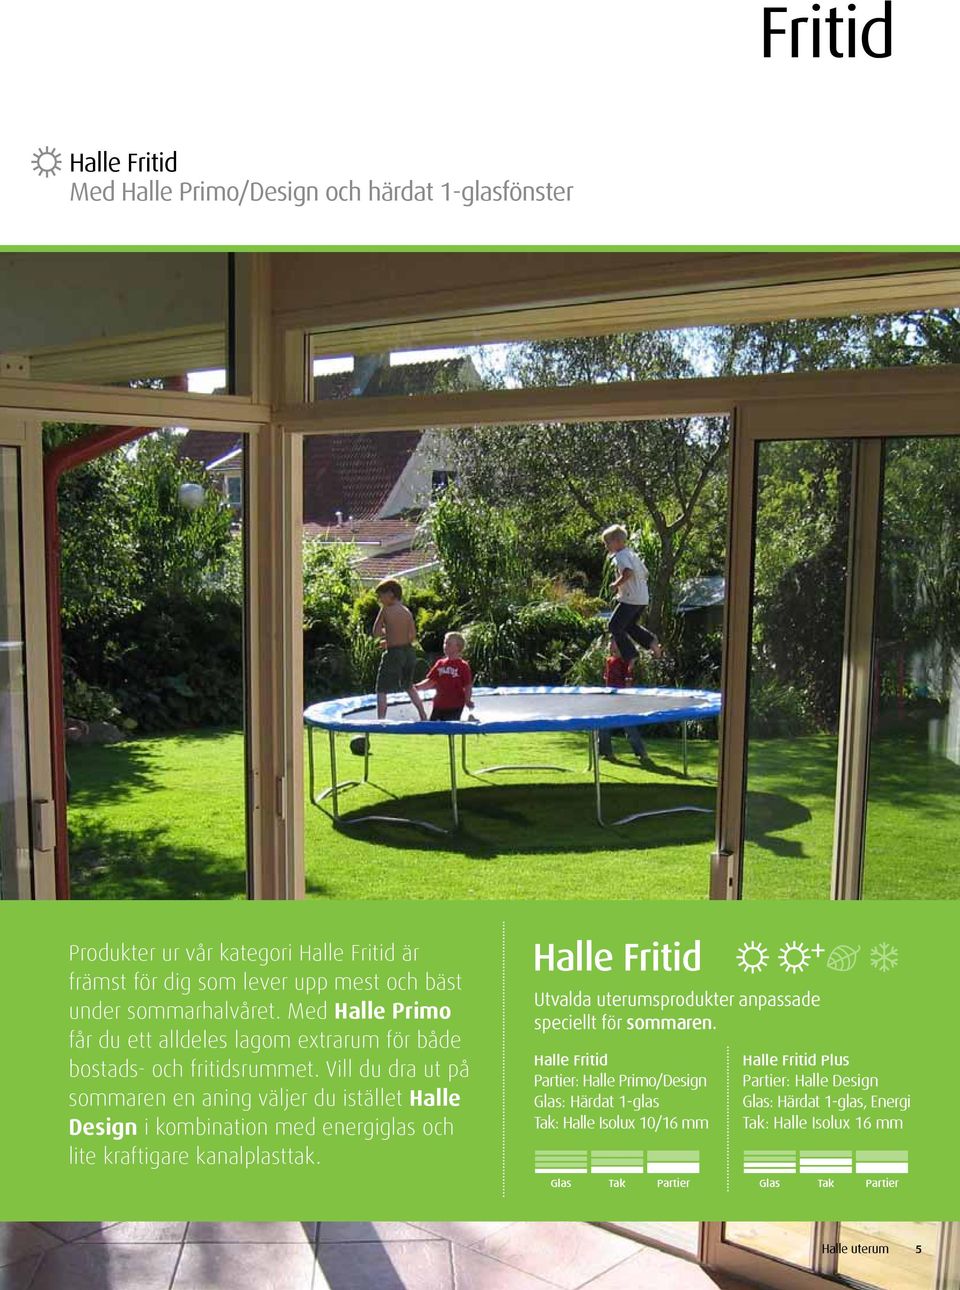 Vill du dra ut på sommaren en aning väljer du istället Halle Design i kombination med energiglas och lite kraftigare kanalplasttak.